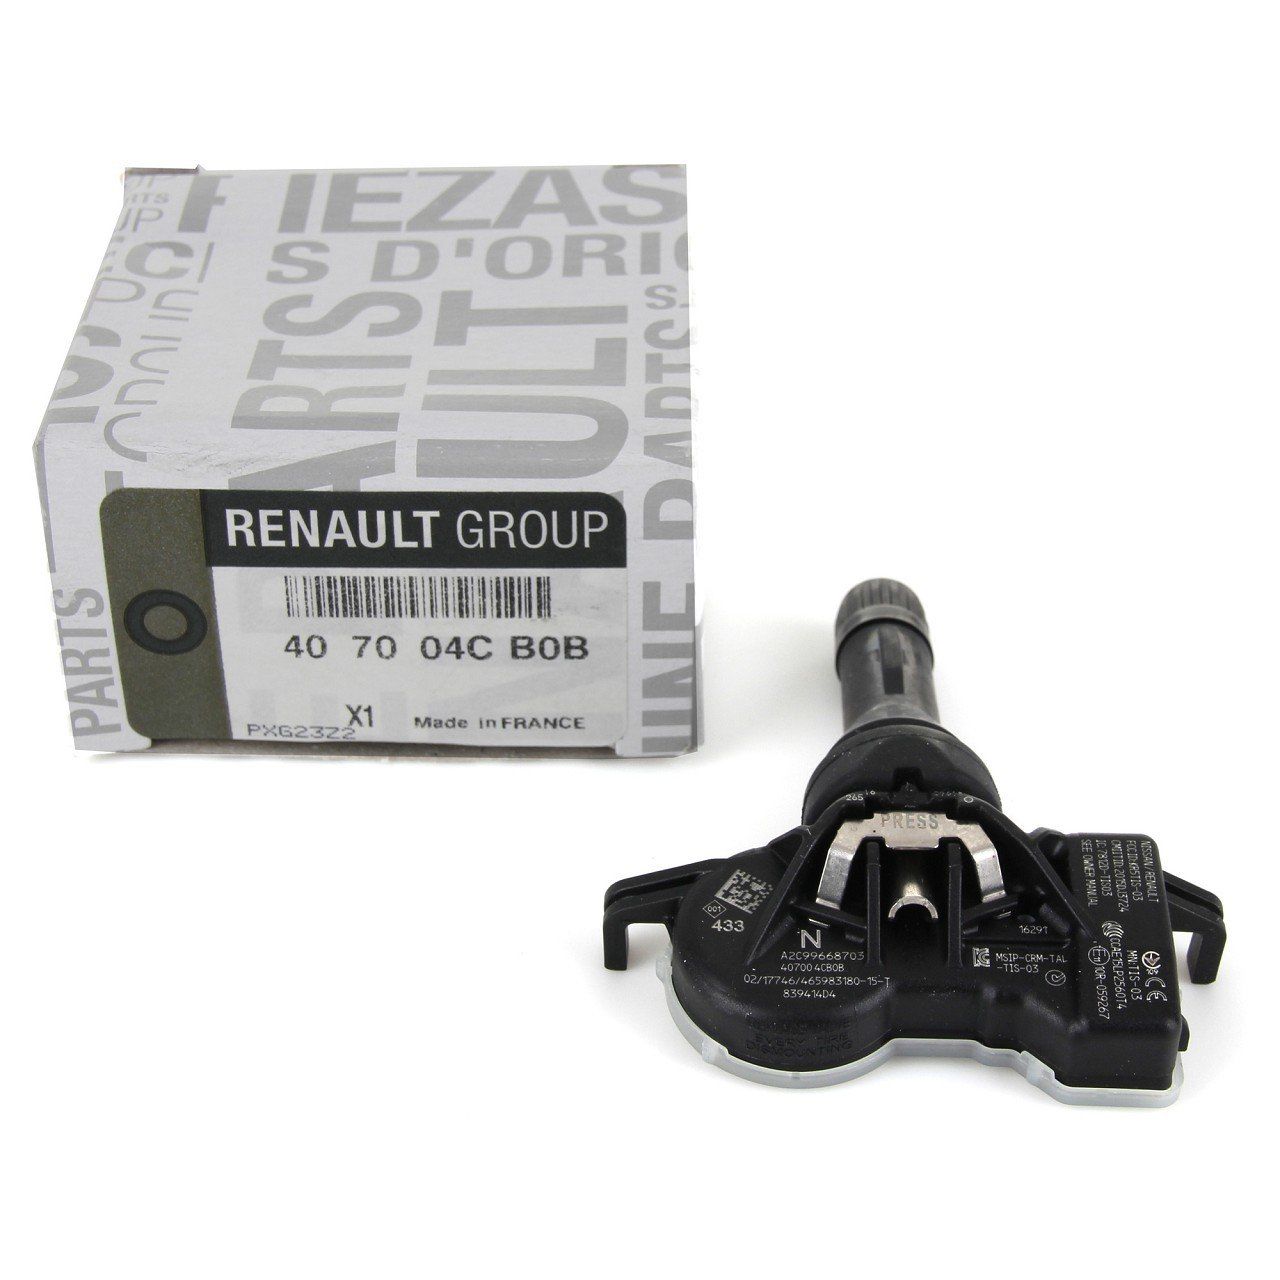 MAIS 407004CB0B | Renault Kadjar Lastik Basınç Sensörü